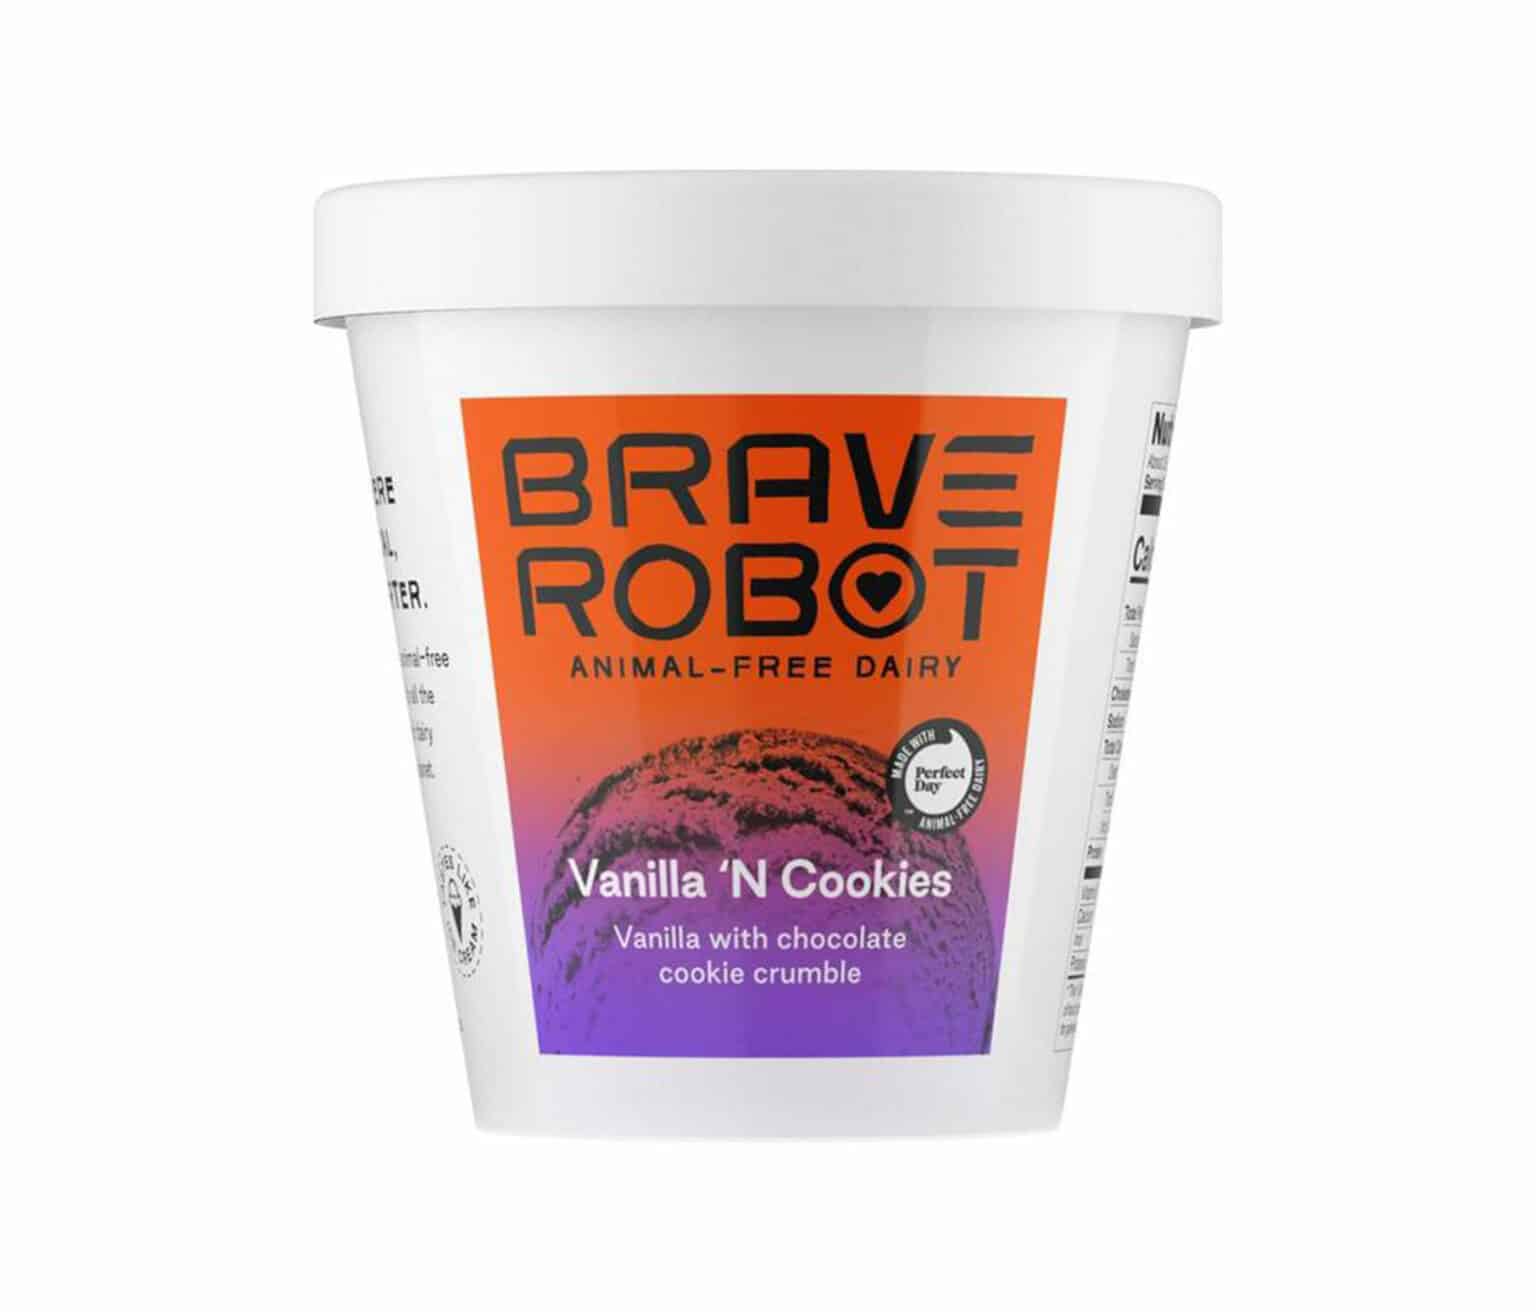 brave robot ice cream gluten free